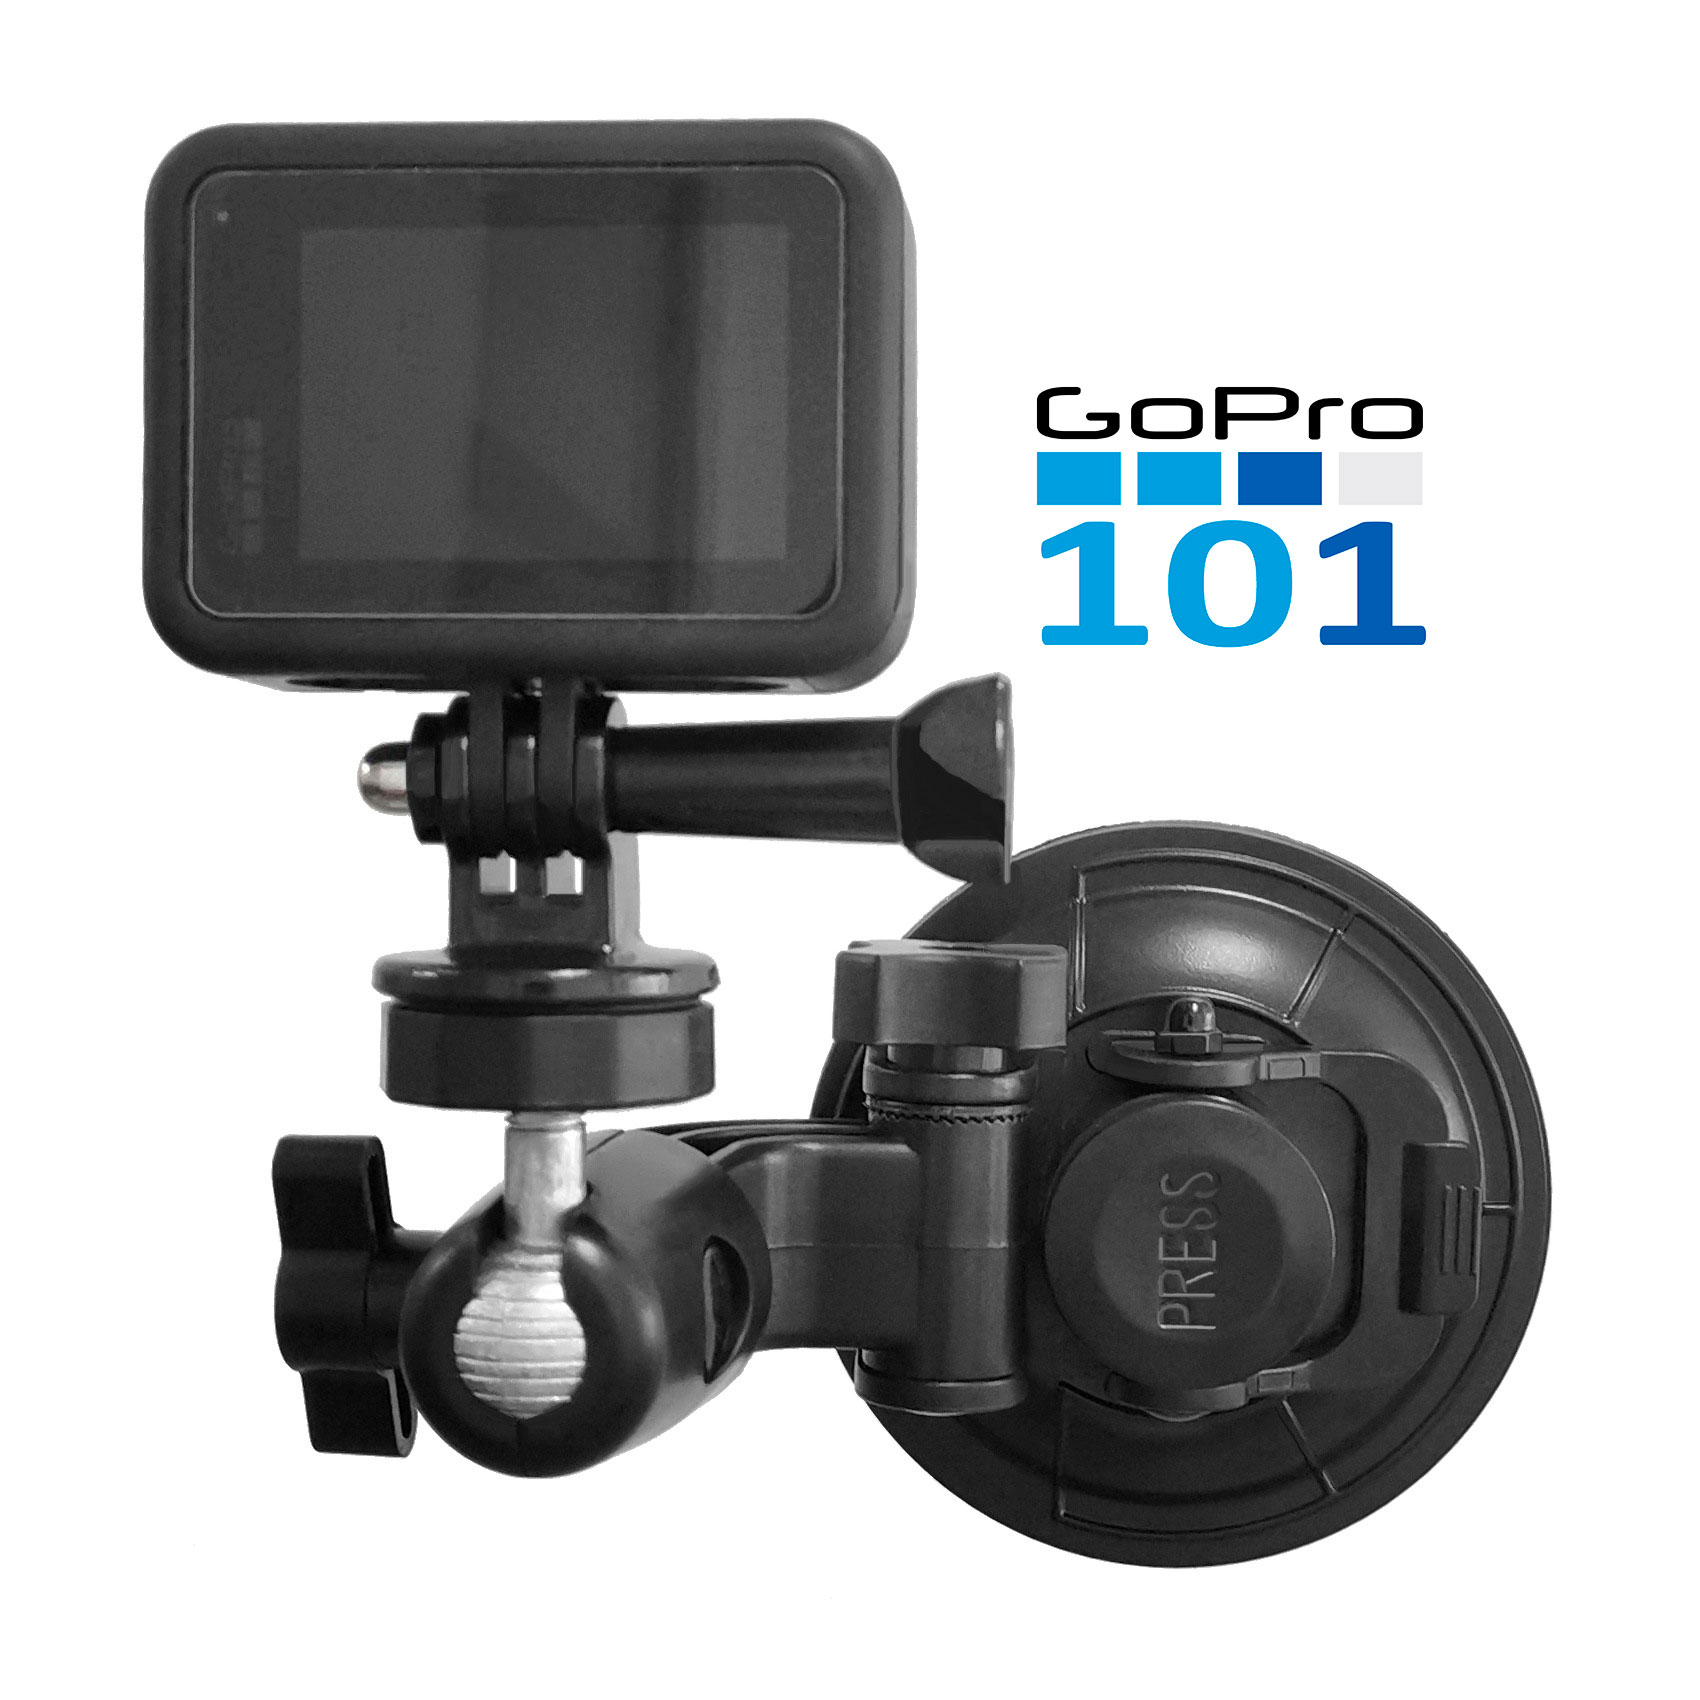 Đế Hít Kính Size Đại cho GoPro, Action cam - Chân Đế Gắn Kính ô tô Hút Chân Không - Gopro101